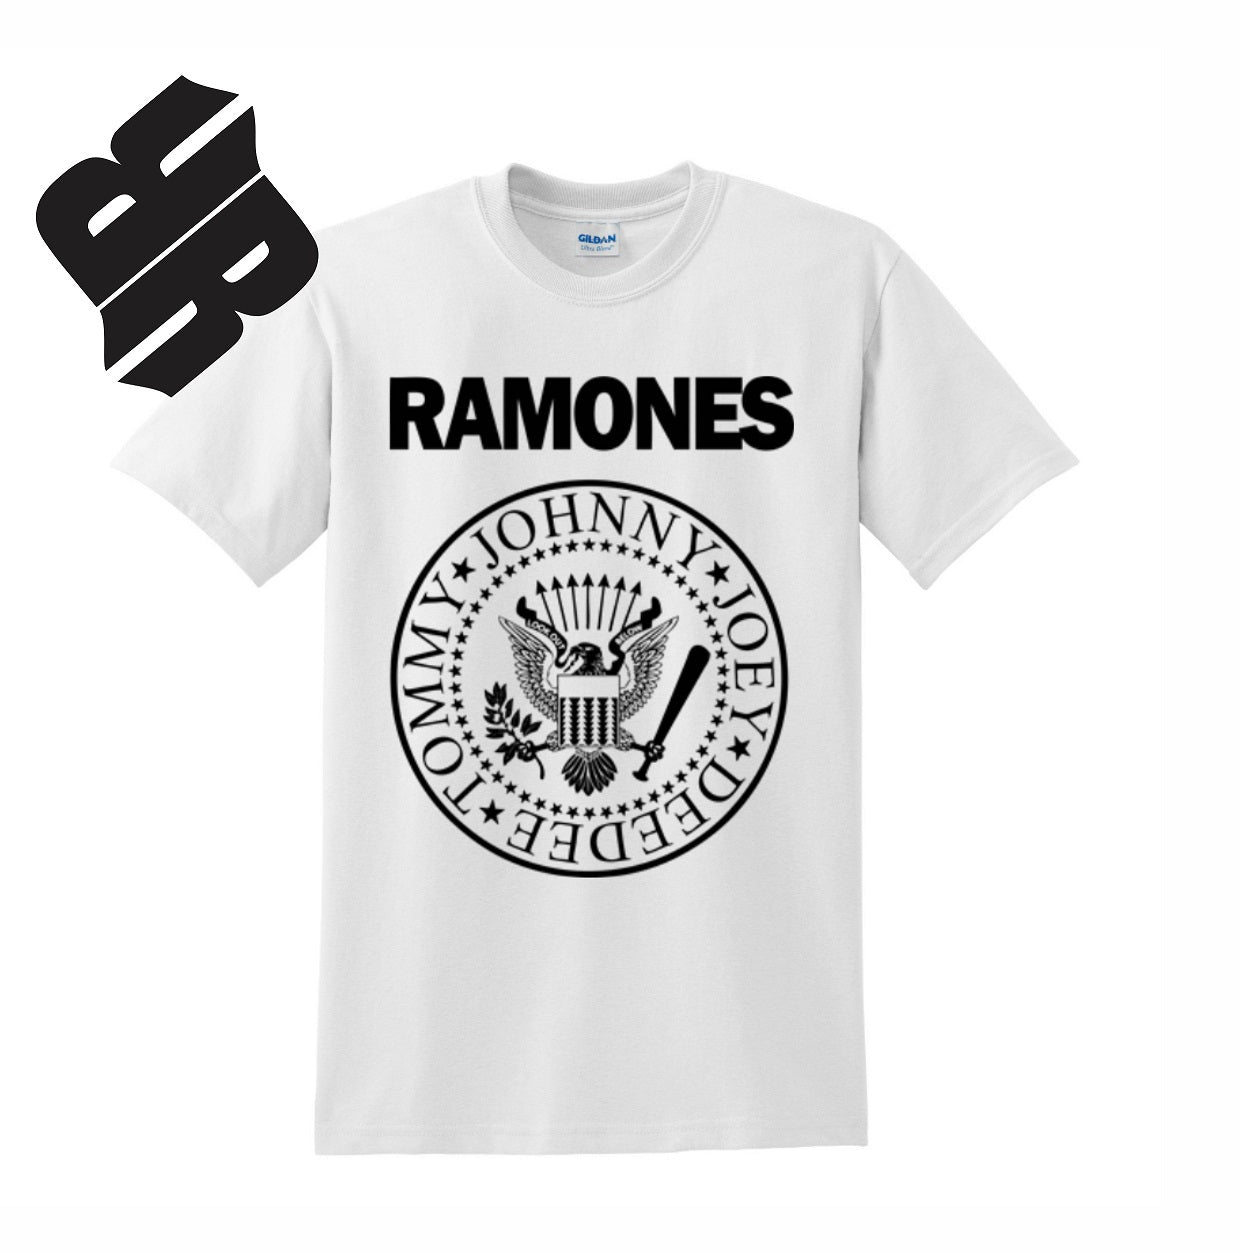 Radical Band  Men's Shirts - Ramones (White) - MYSTYLEMYCLOTHING